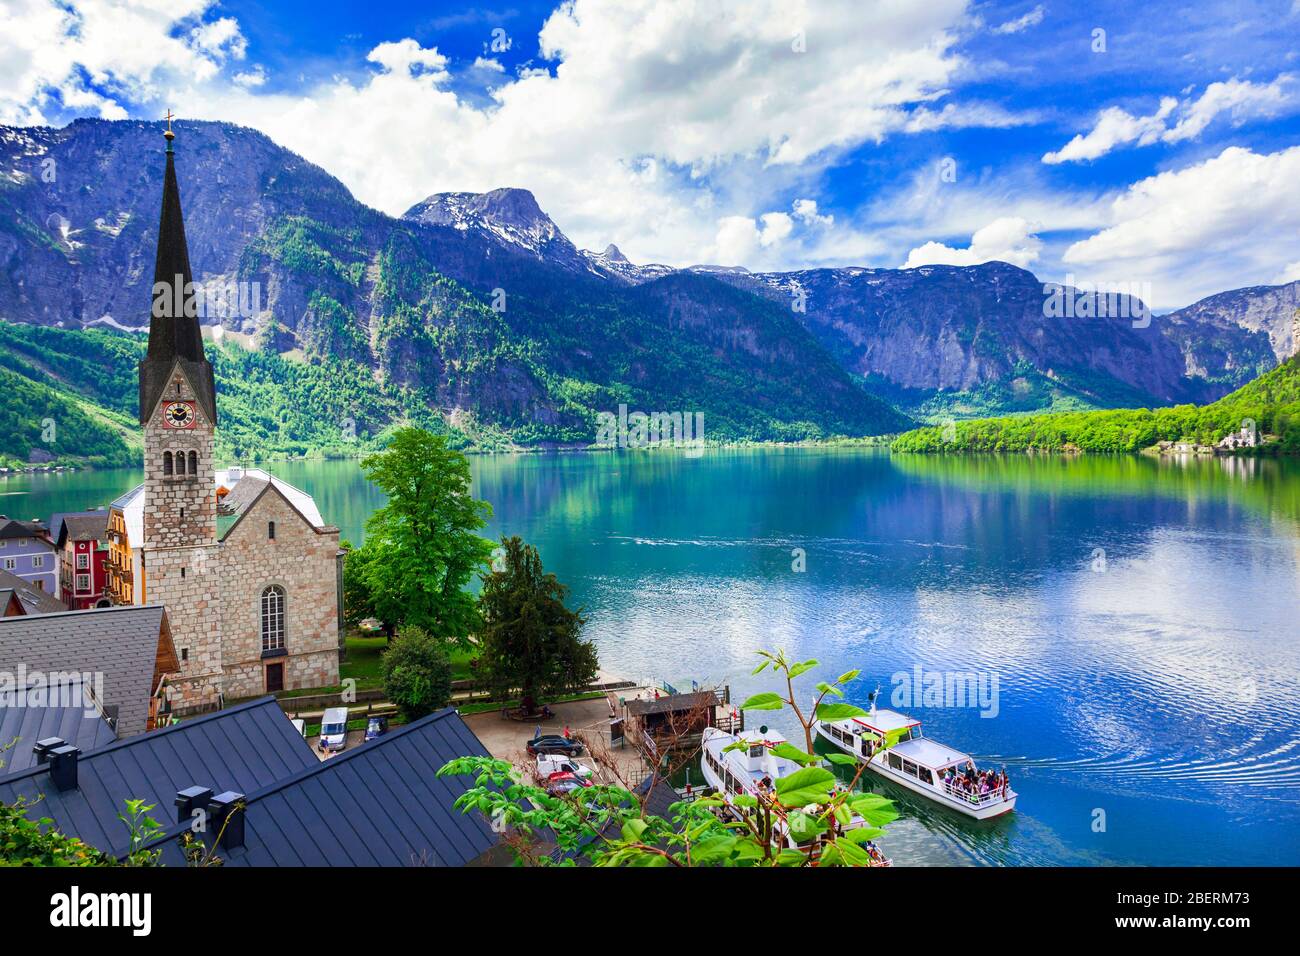 Impressive Hallstatt village and lake,Austria. Stock Photo